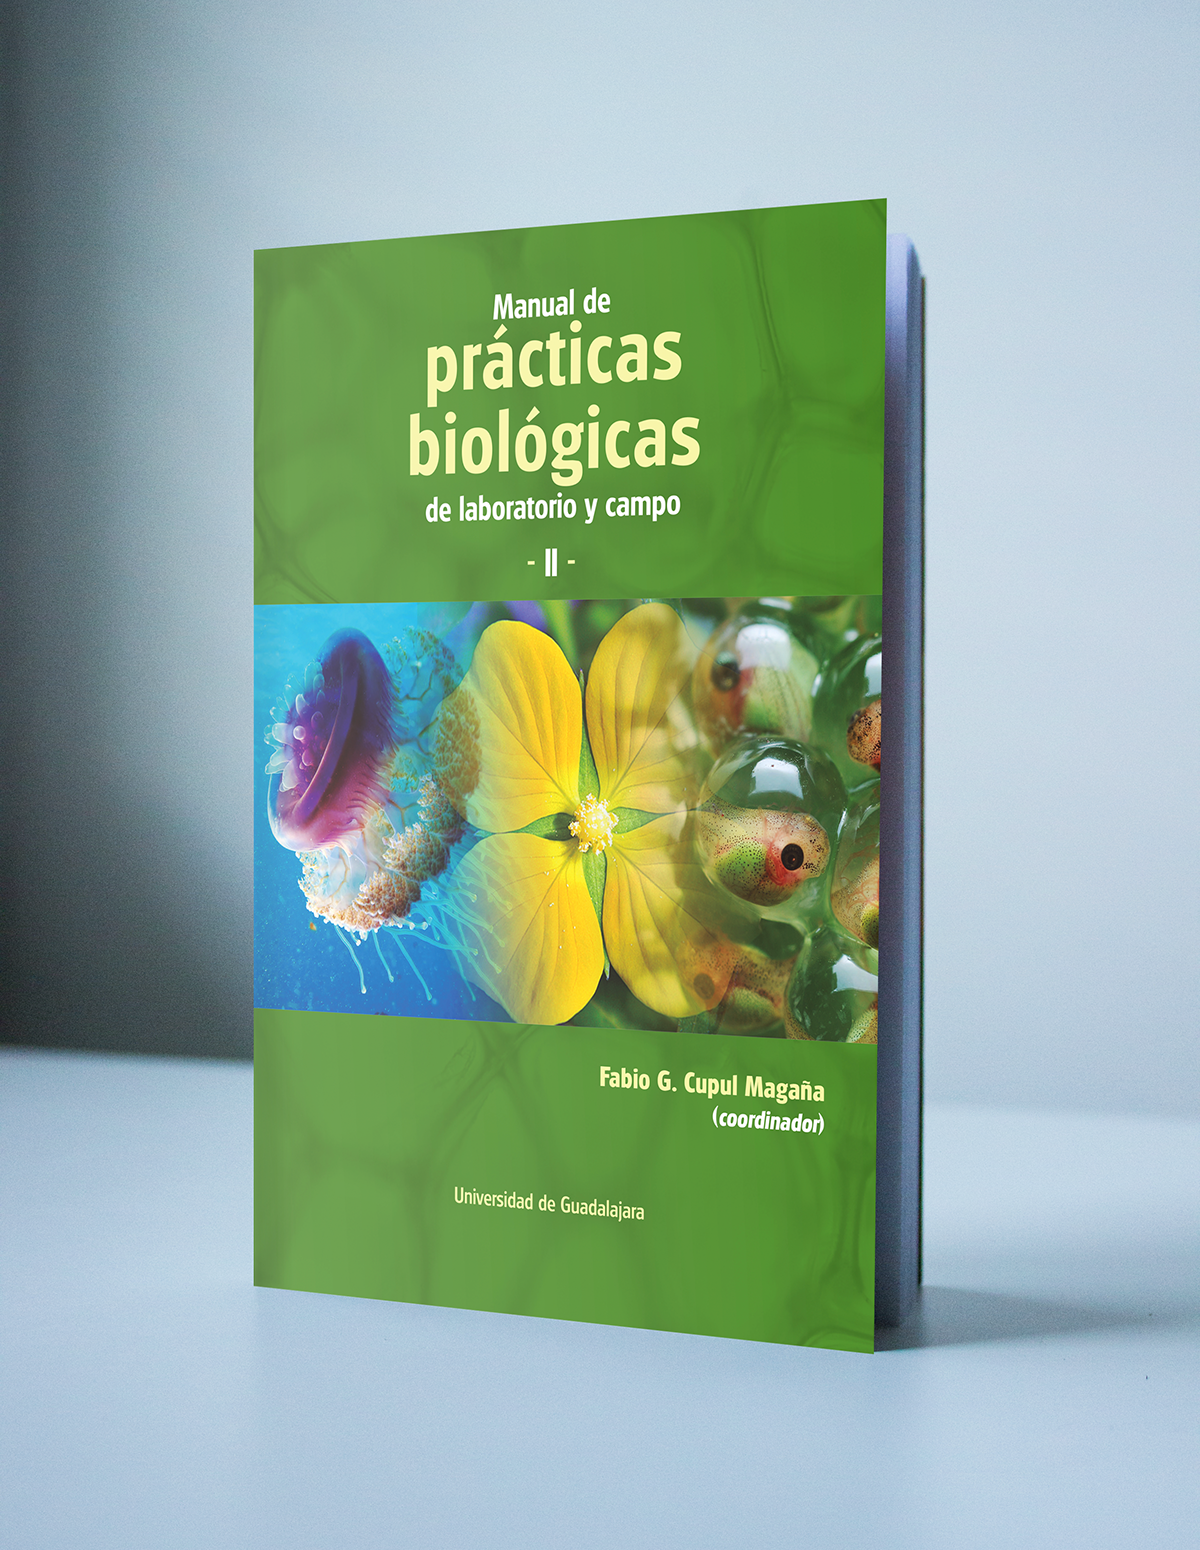 book libro Portada cover forros udeg CUCOSTA biology bilogía Nature